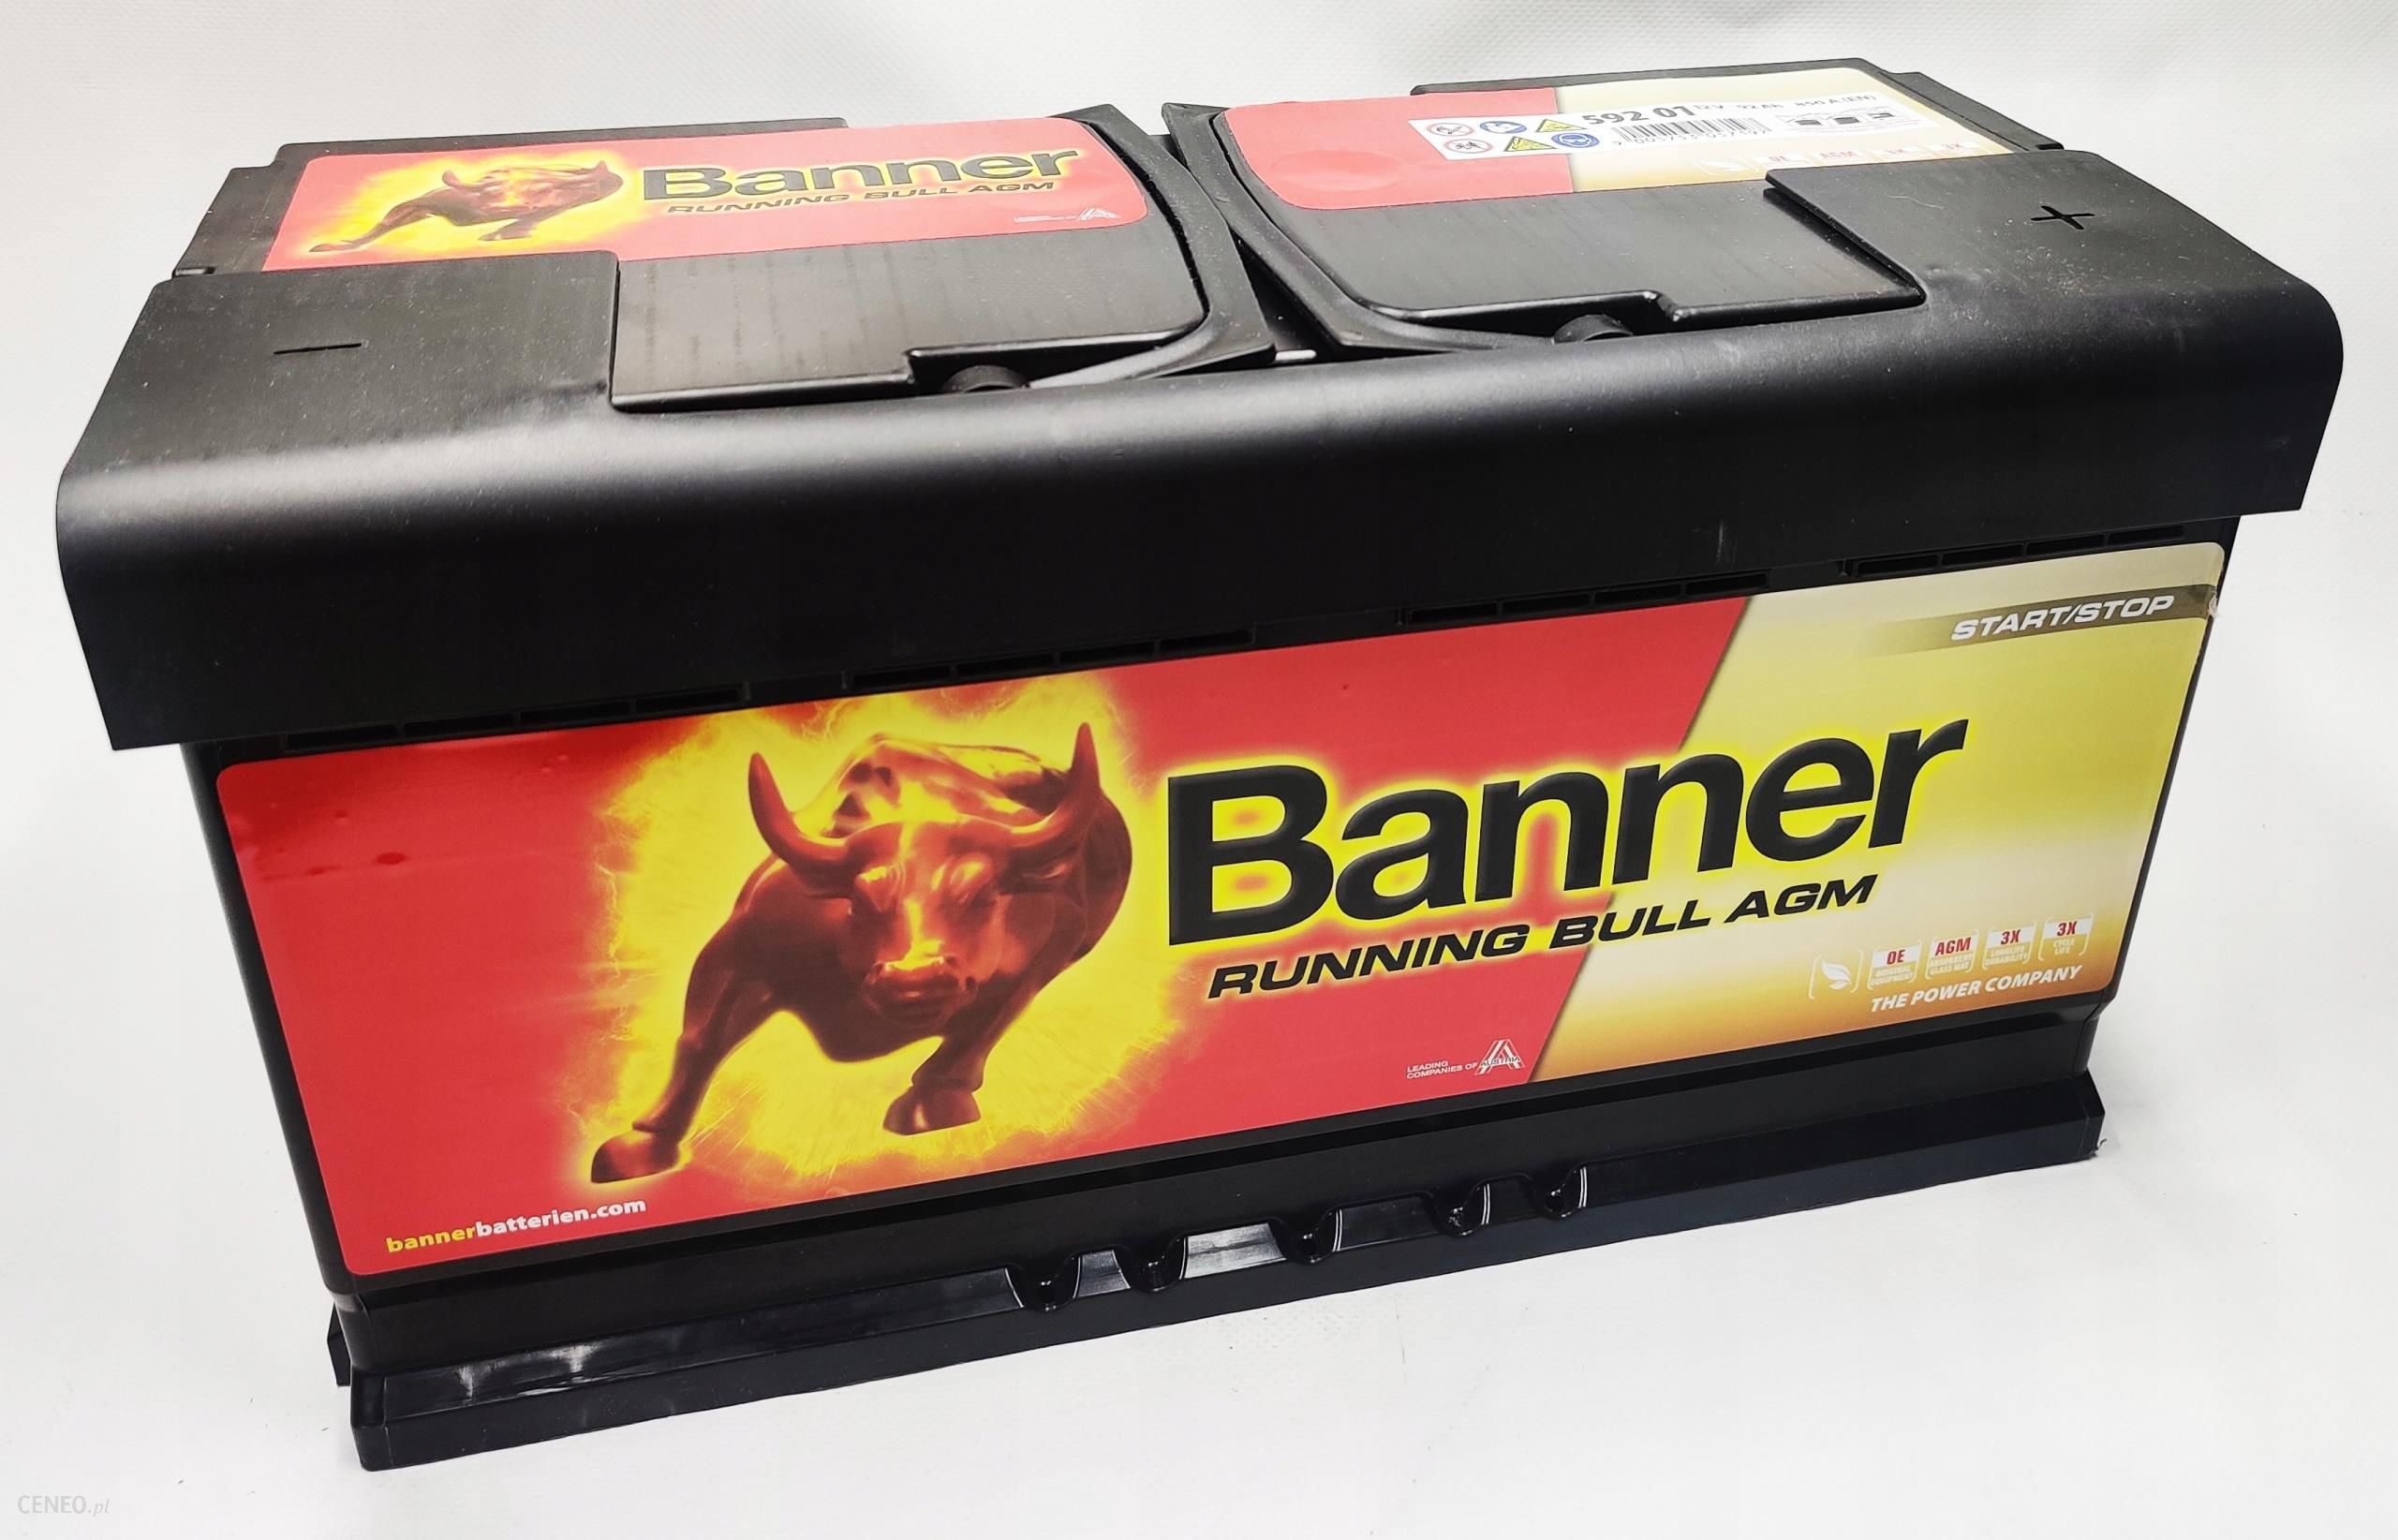 Banner Autobatterie Power Bull P7209 72Ah